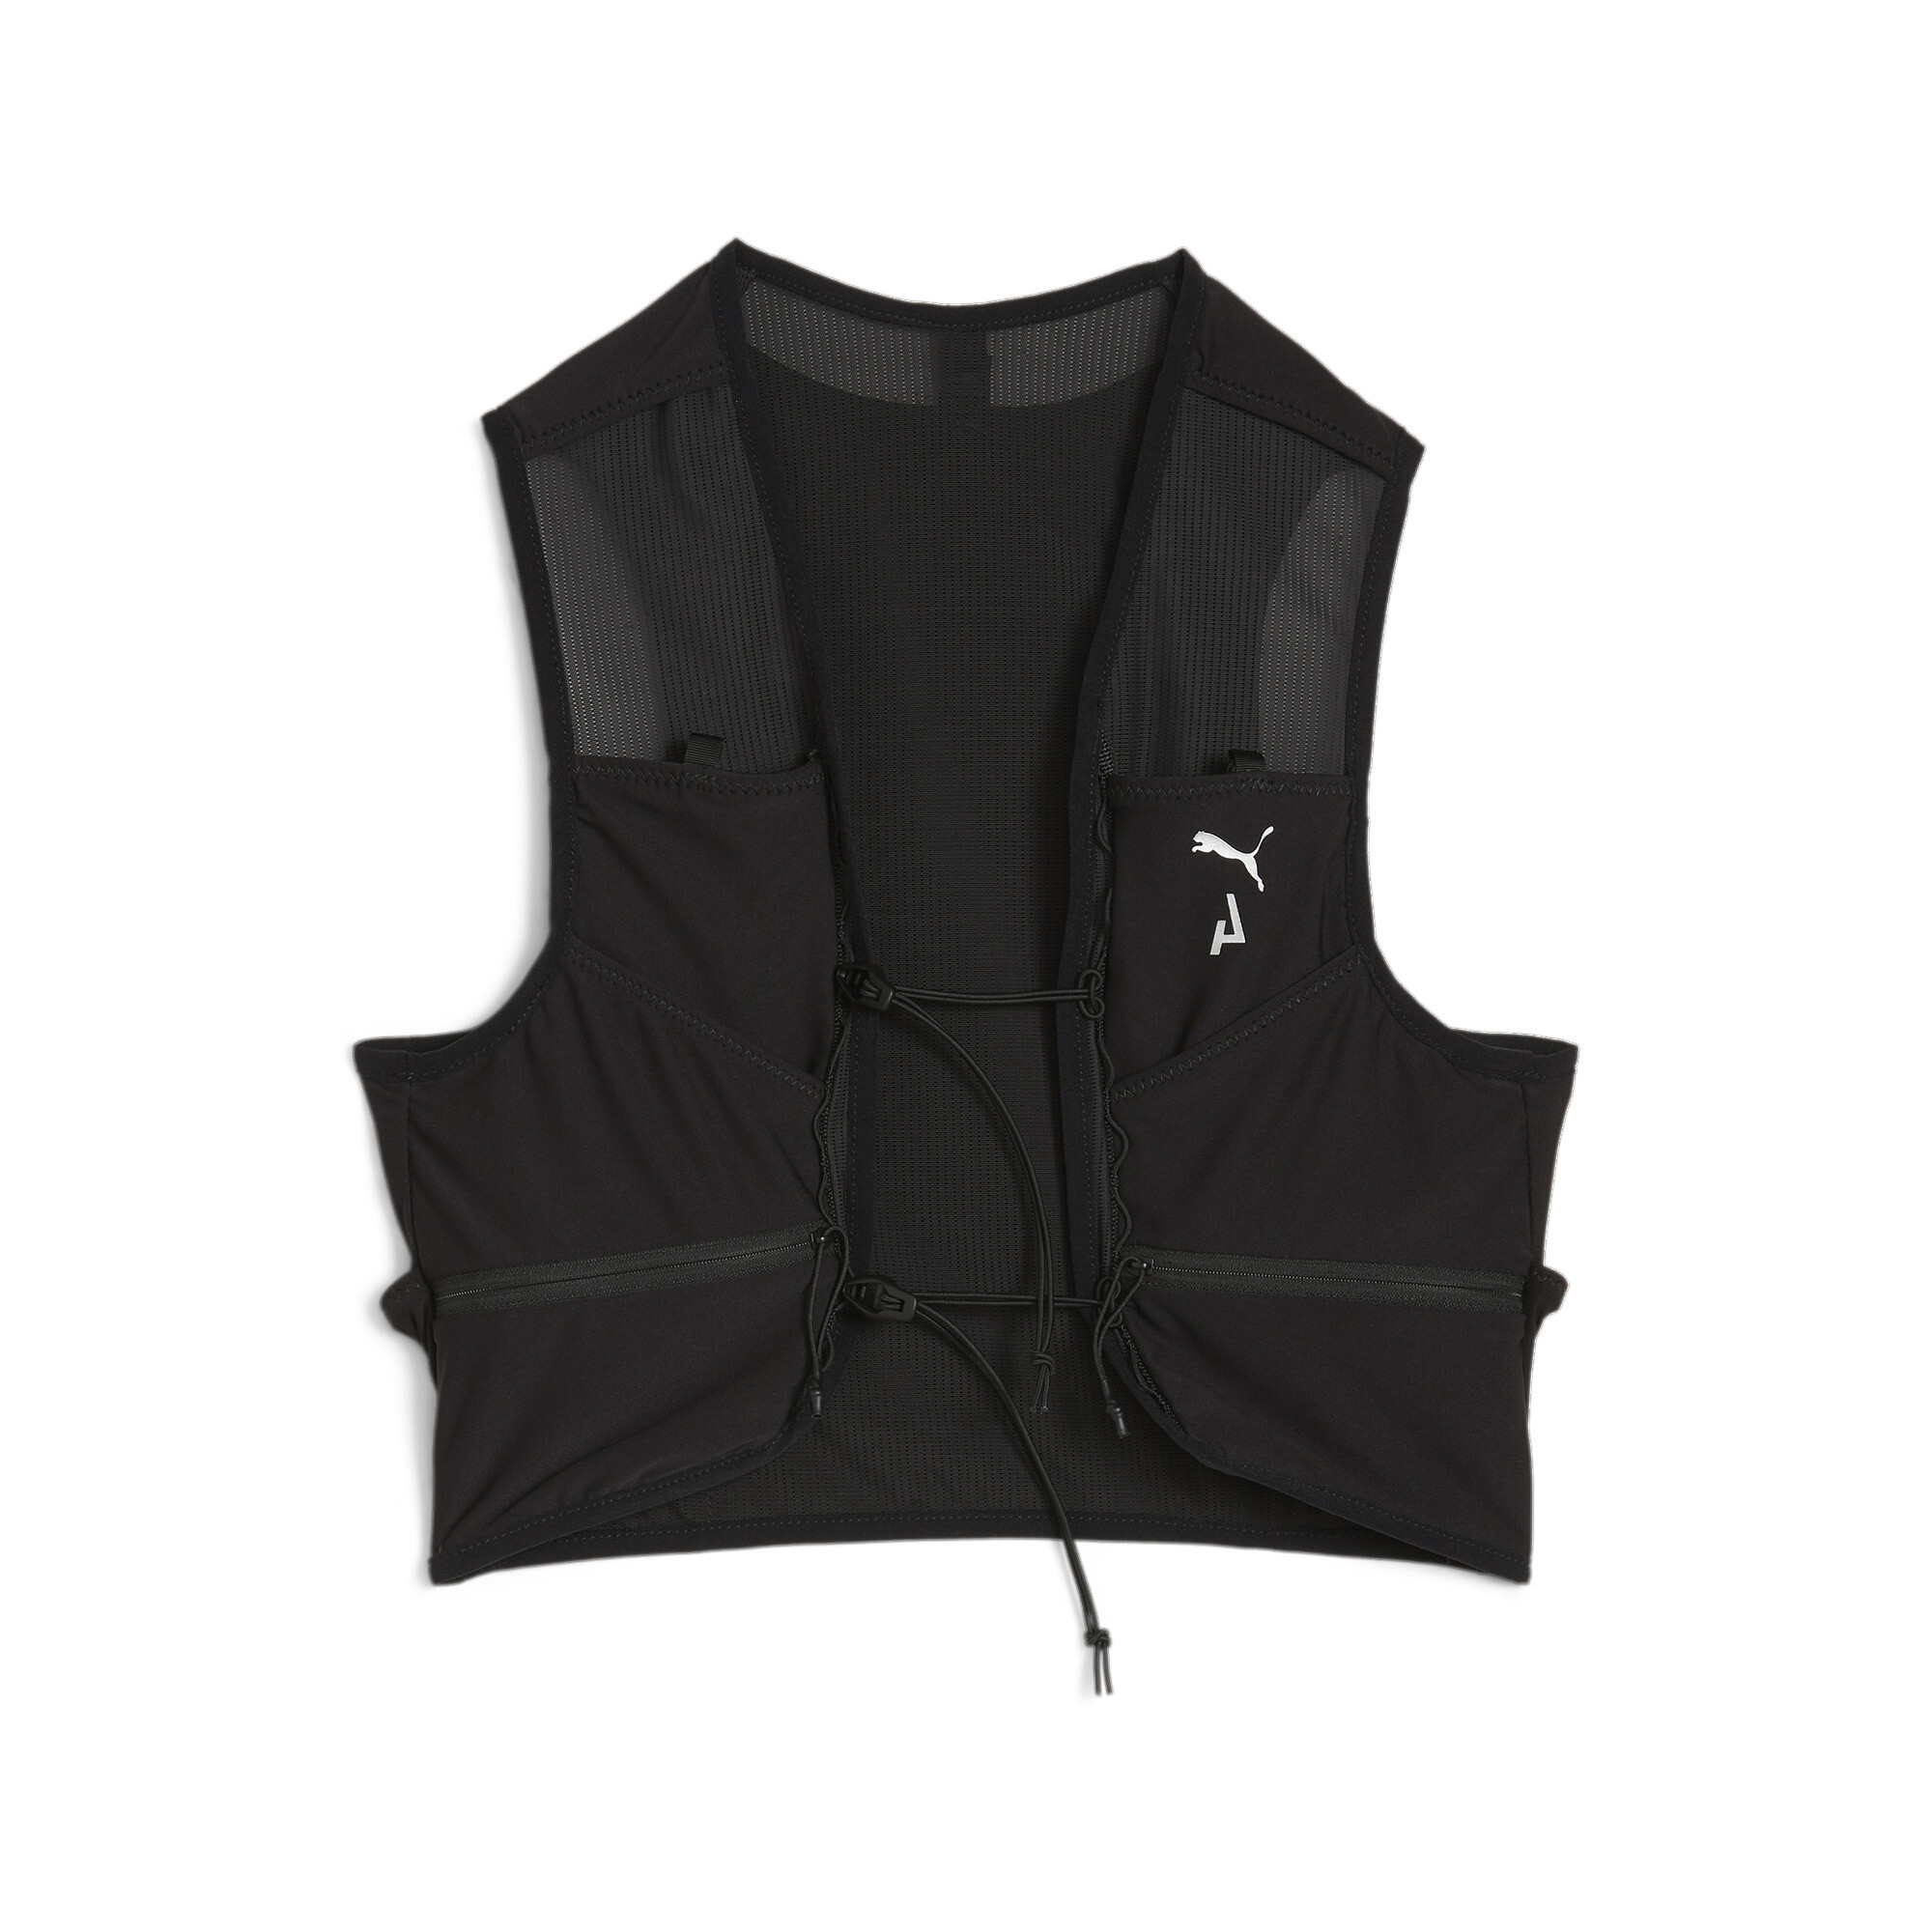 Puma SEASONS Trail Running Vest, Black, Size M, Accessories